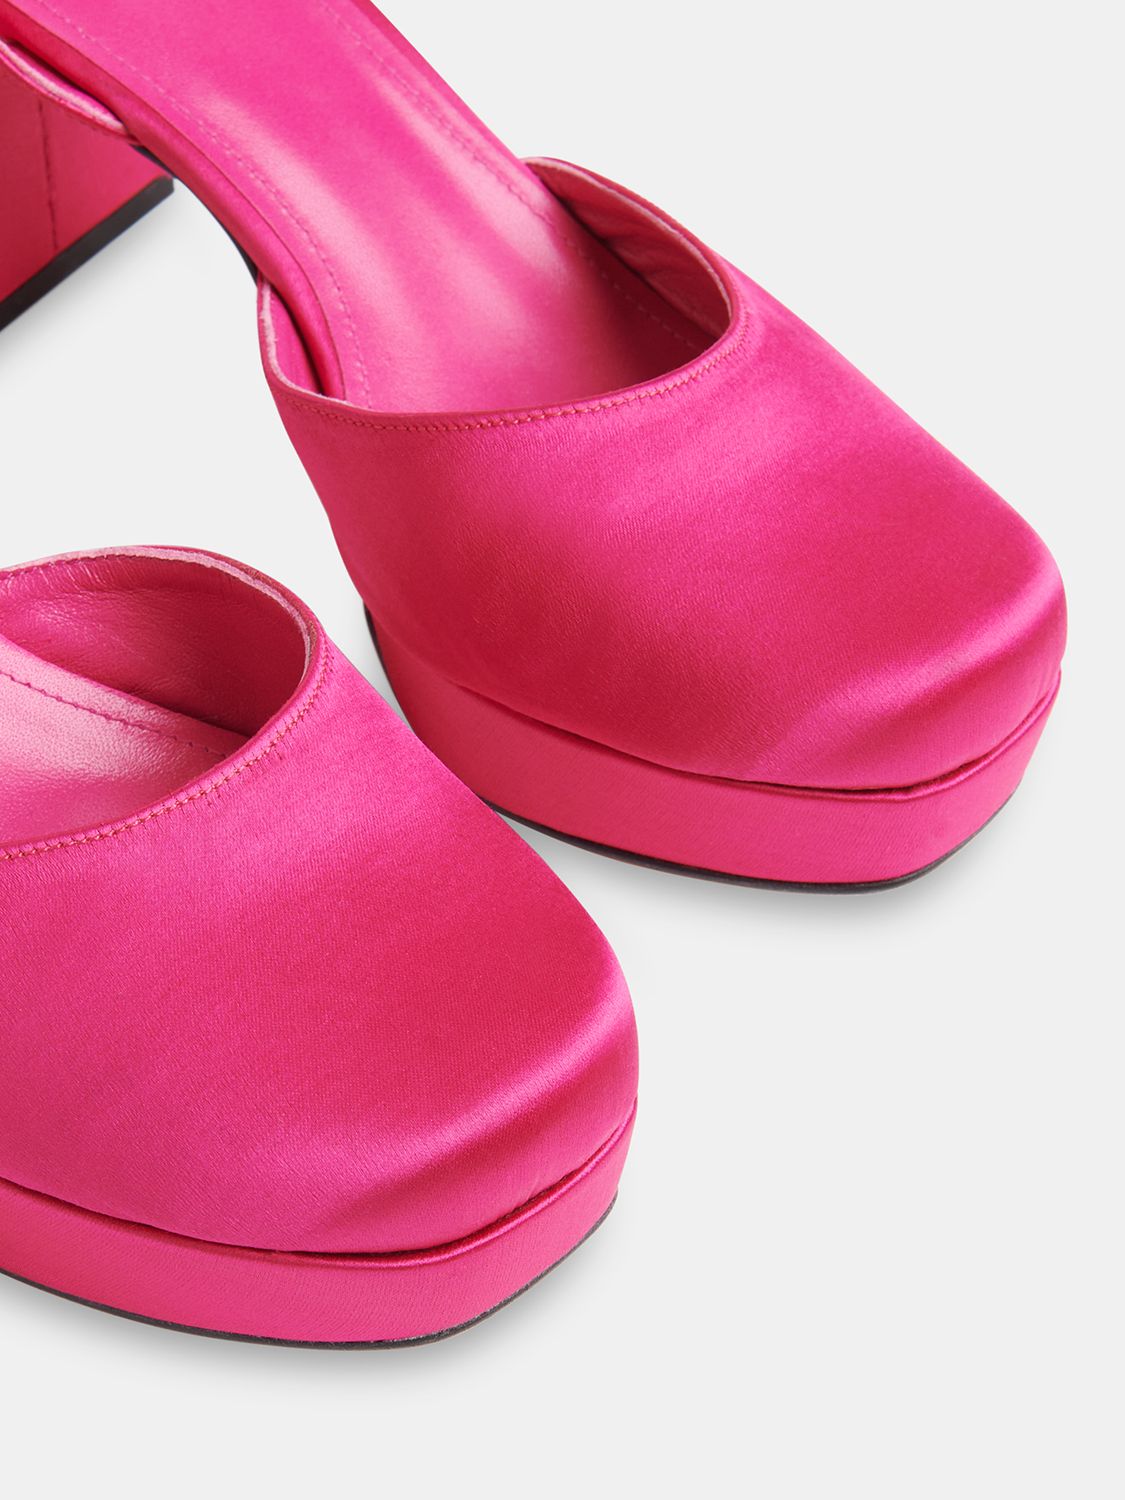 Whistles Estella Satin Platform Shoes, Pink, 3